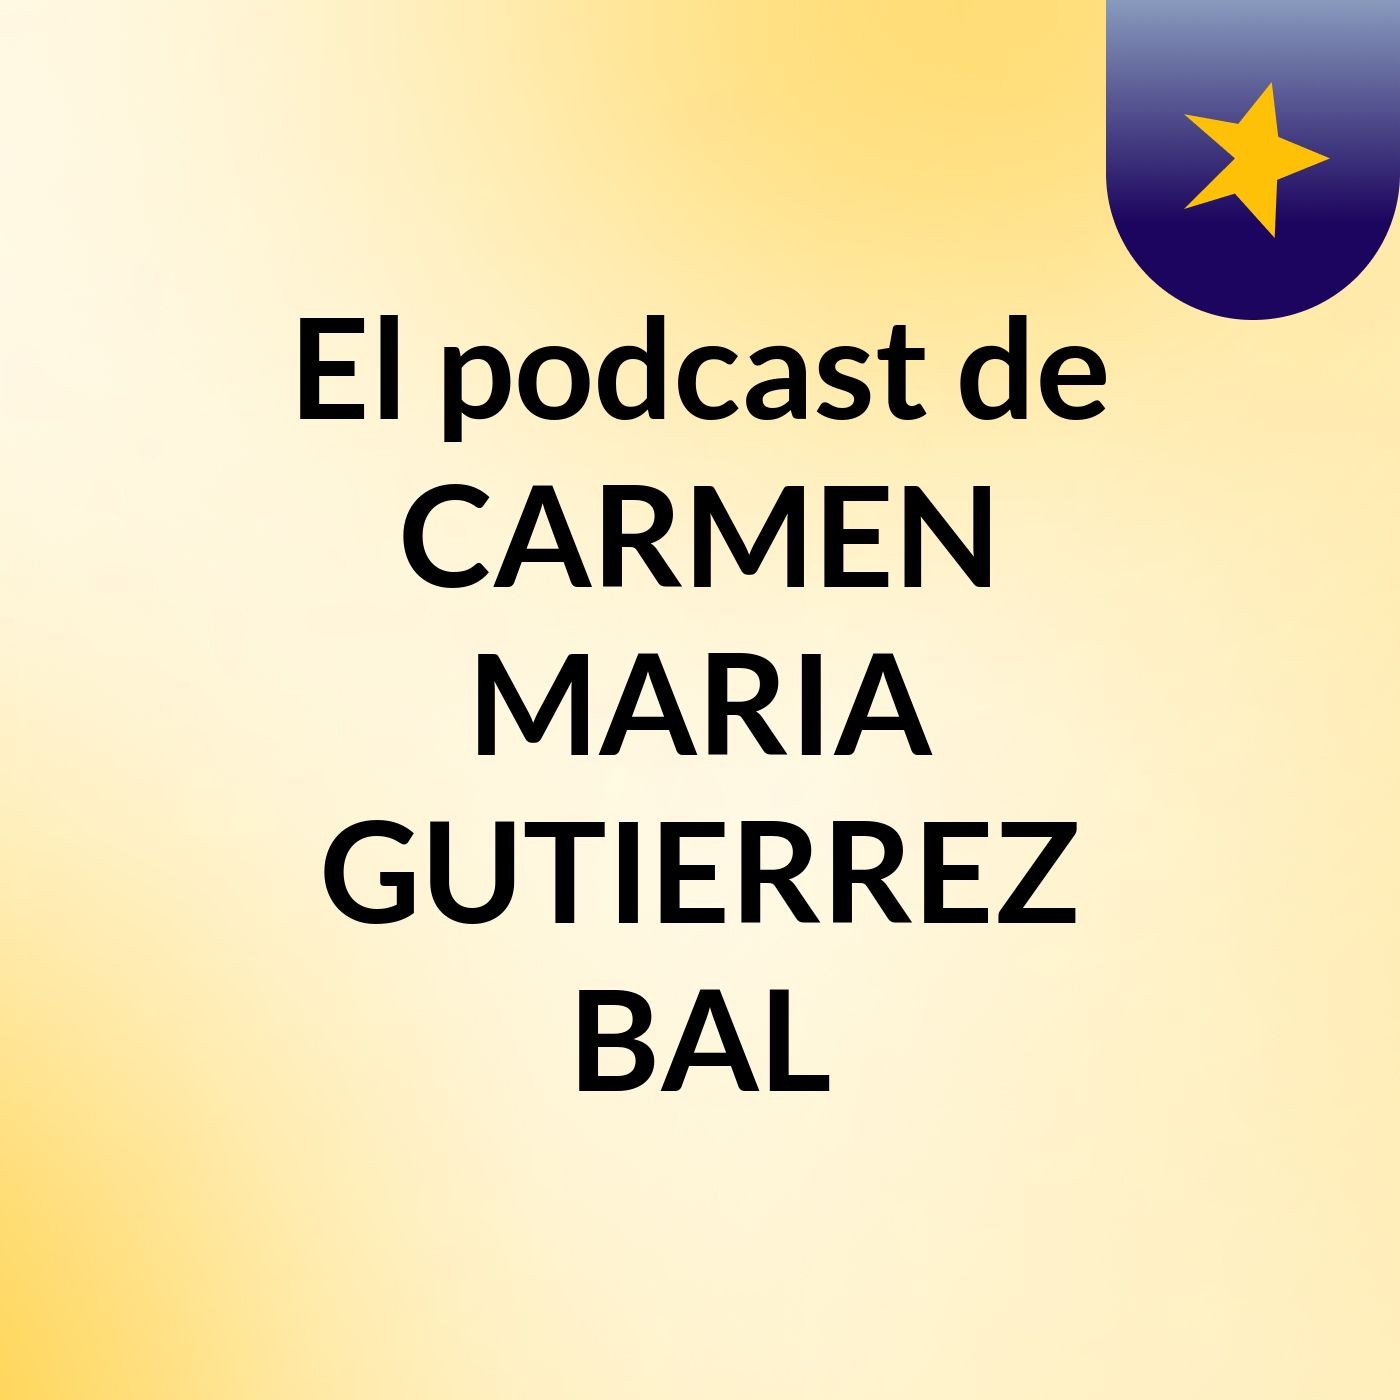 El podcast de CARMEN MARIA GUTIERREZ BAL